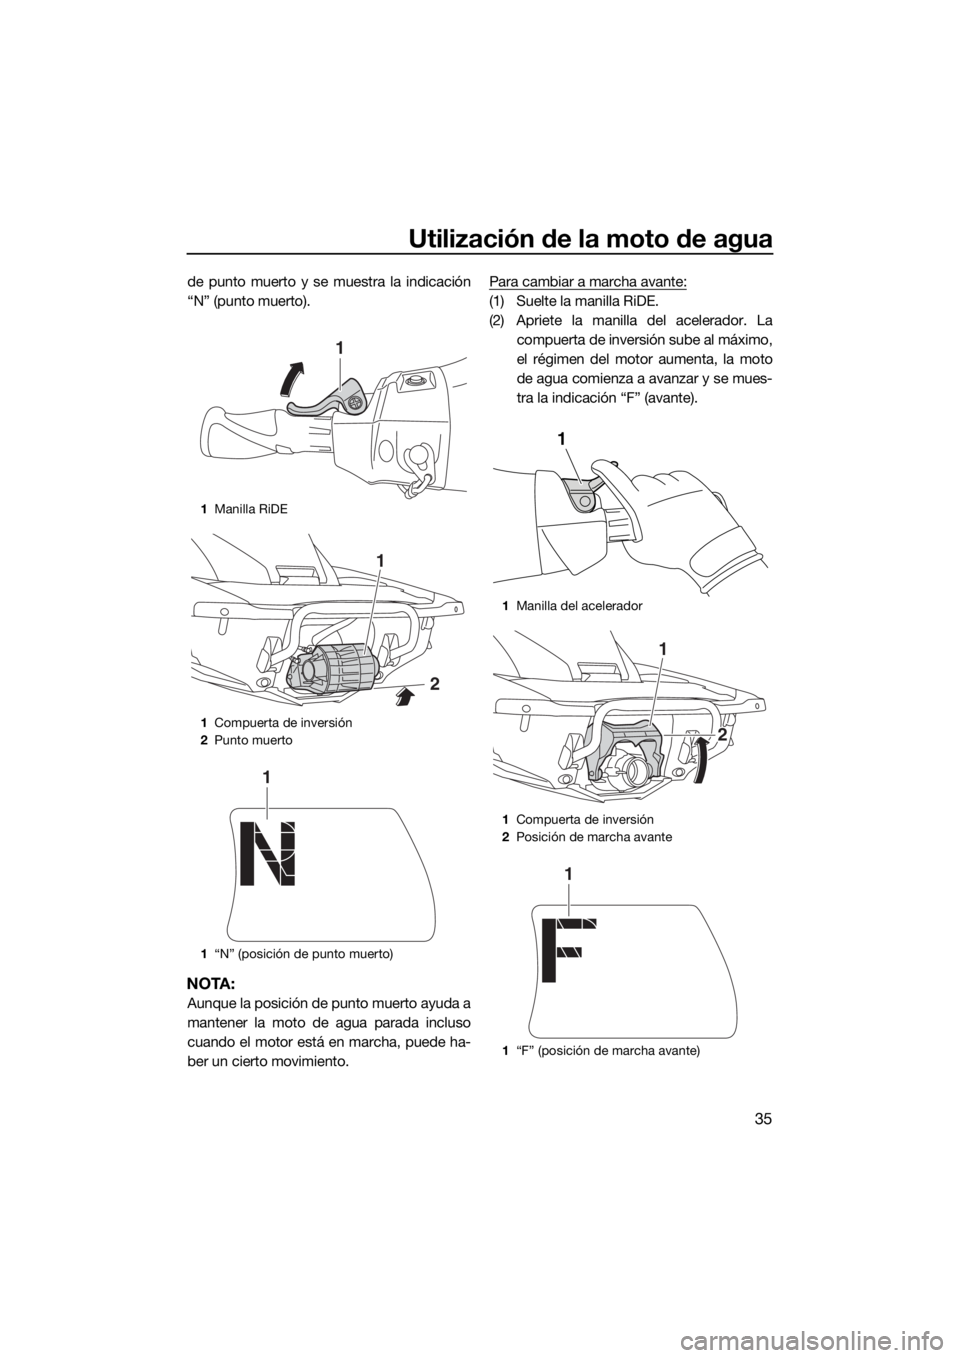 YAMAHA FX HO CRUISER 2015  Manuale de Empleo (in Spanish) Utilización de la moto de agua
35
de punto muerto y se muestra la indicación
“N” (punto muerto).
NOTA:
Aunque la posición de punto muerto ayuda a
mantener la moto de agua parada incluso
cuando 